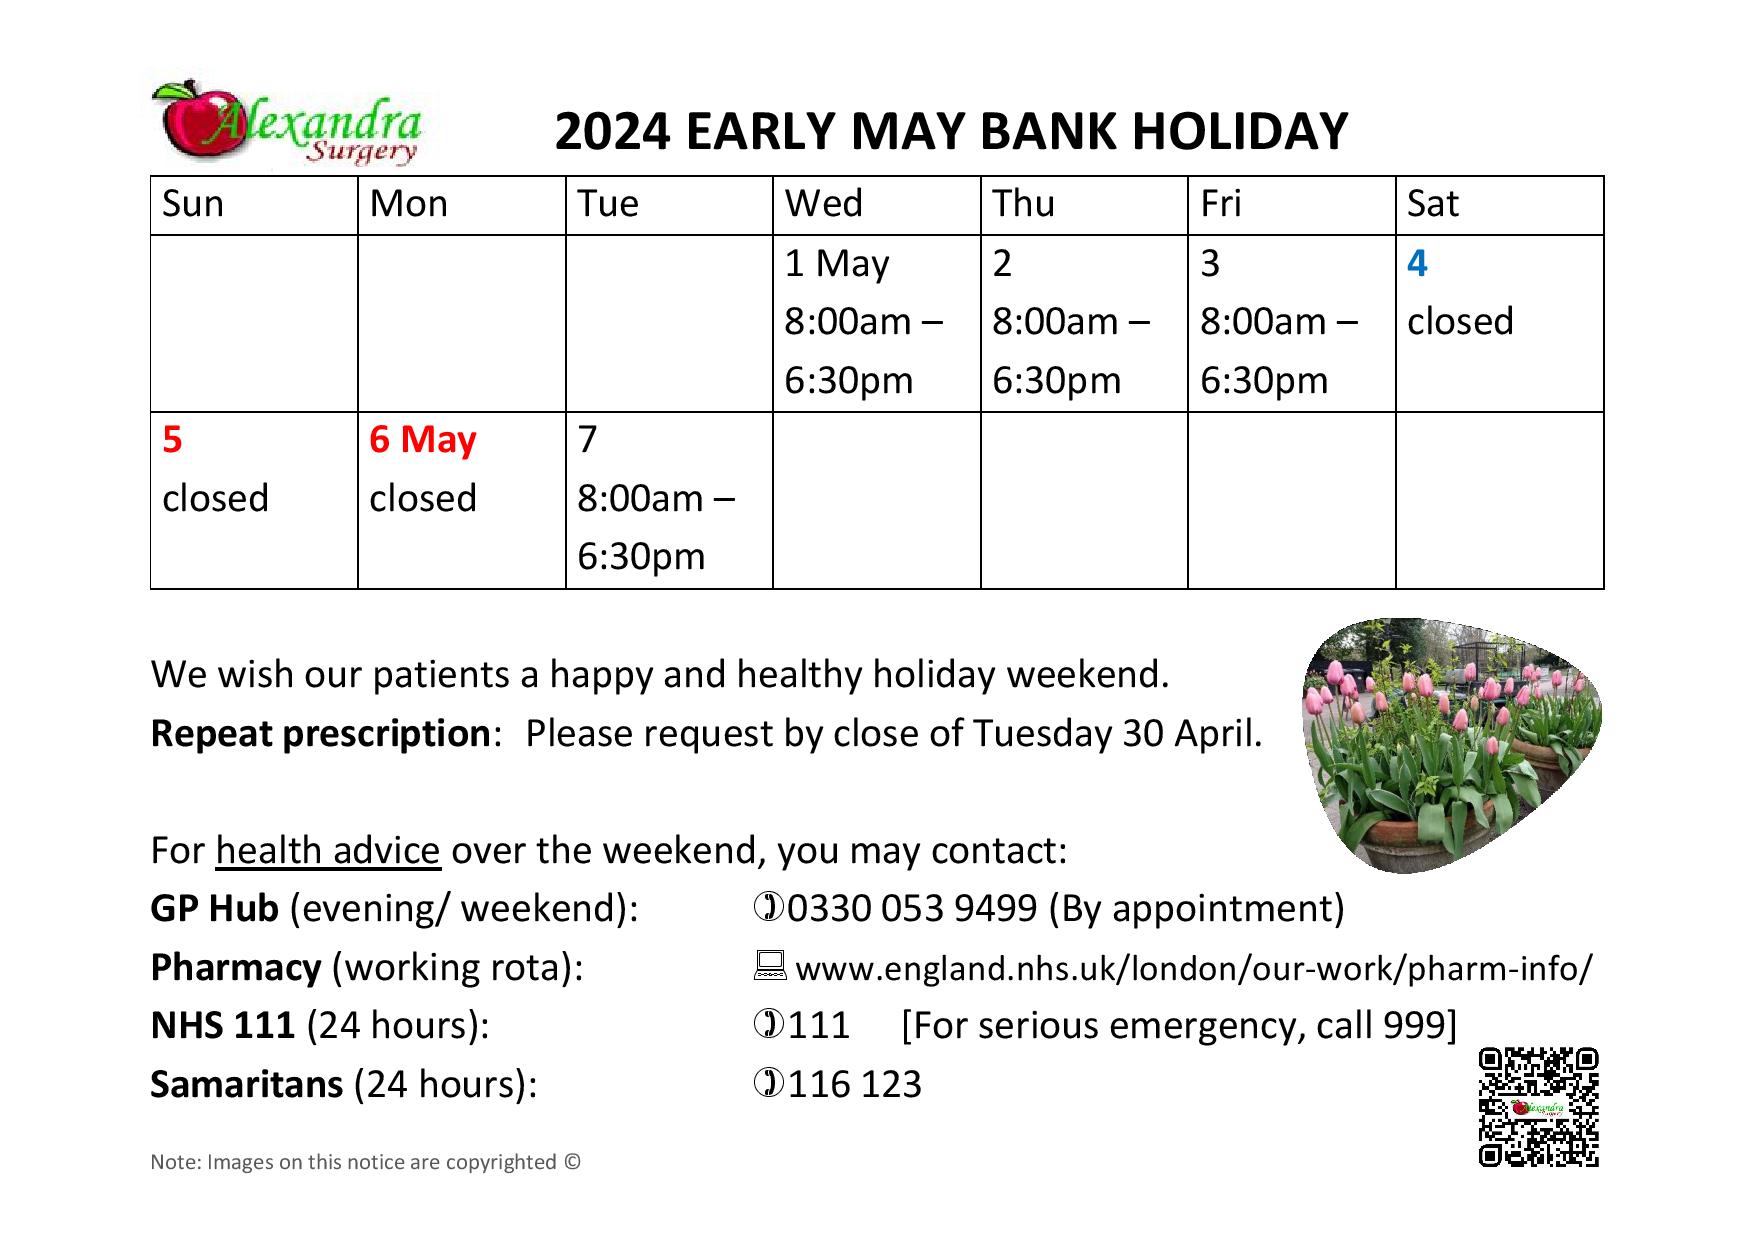 Early May bank holiday 2024